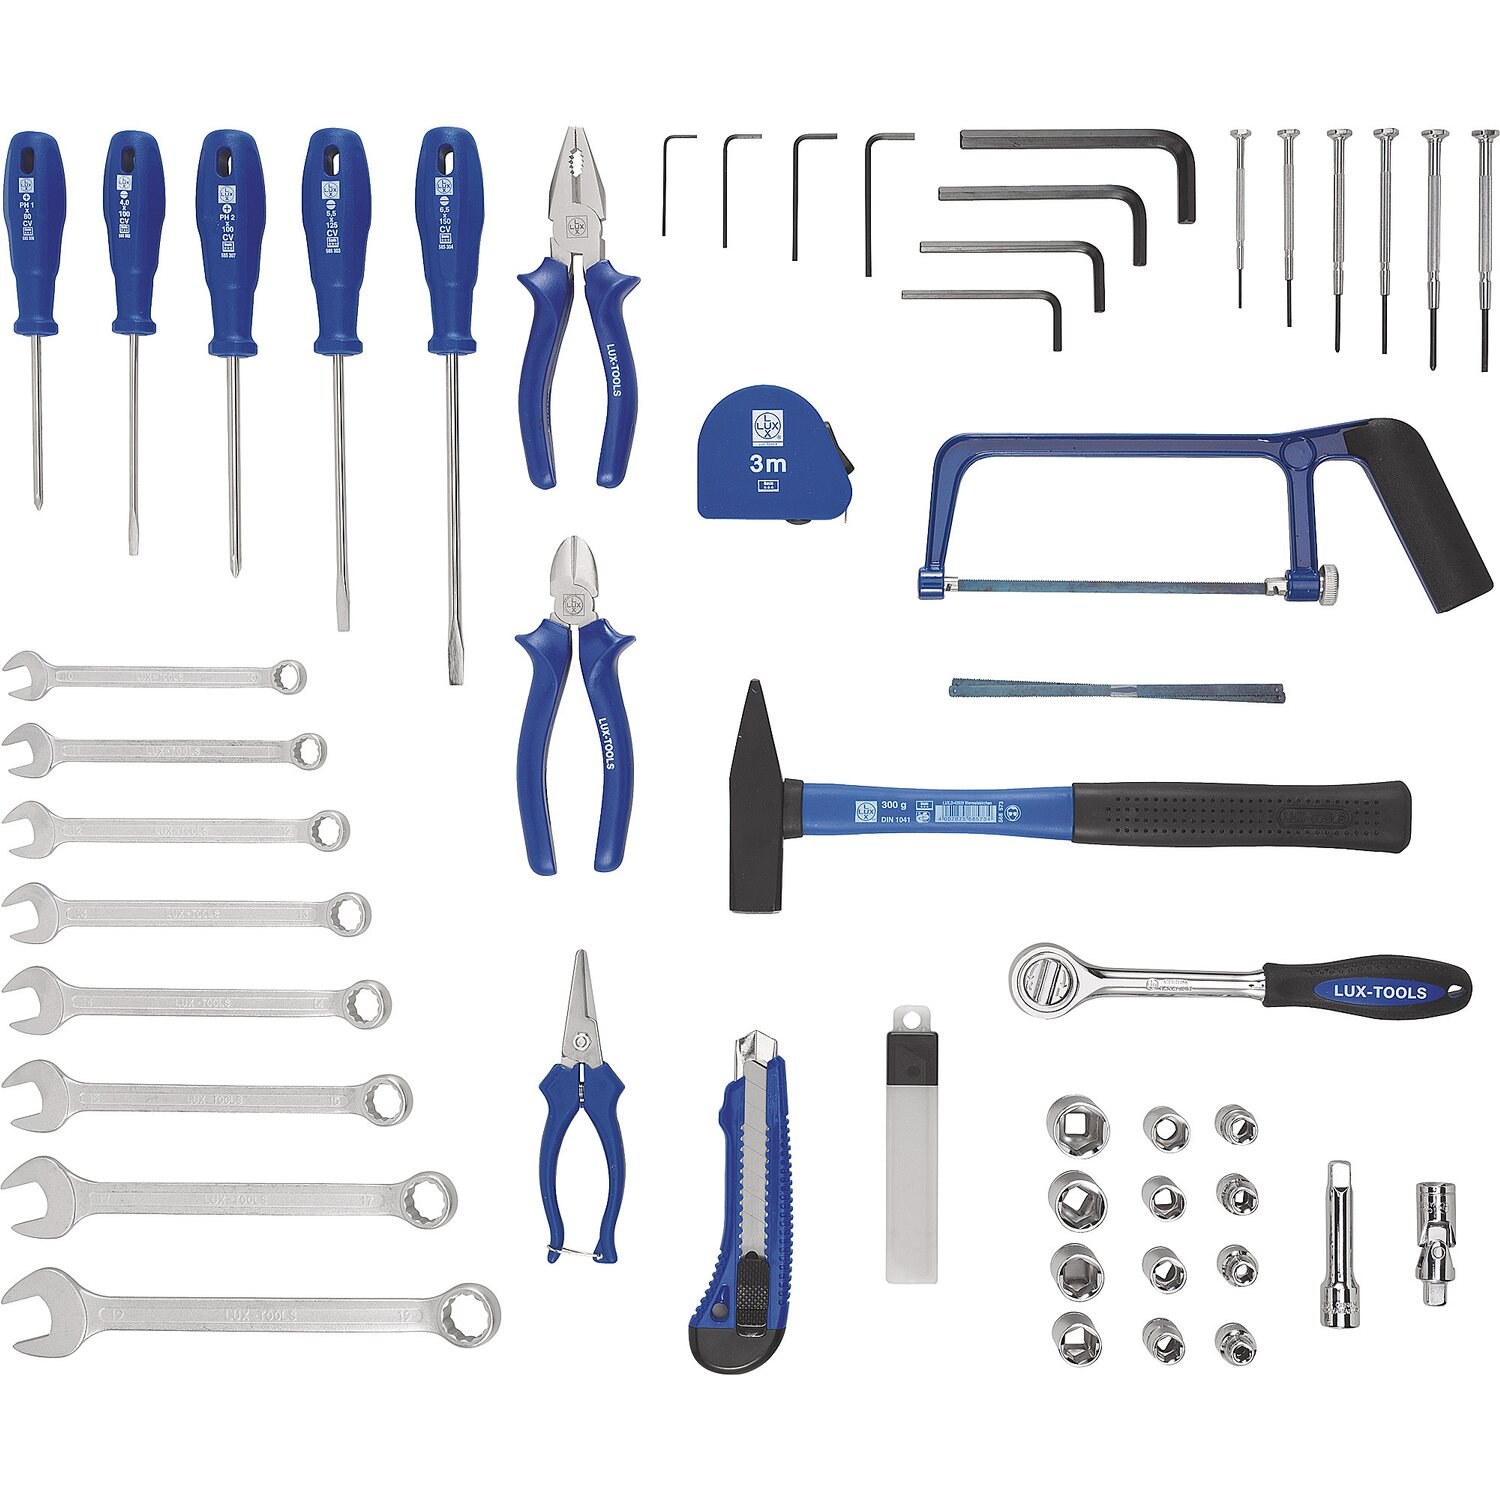 Tools 2.12. Набор Lux Tools инструментов слесарно монтажный 70 шт. Lux Tools набор инструментов синий 43. Набор инструментов Lux-Tools WZK-145 Classic. Lux Tools набор инструментов 54.